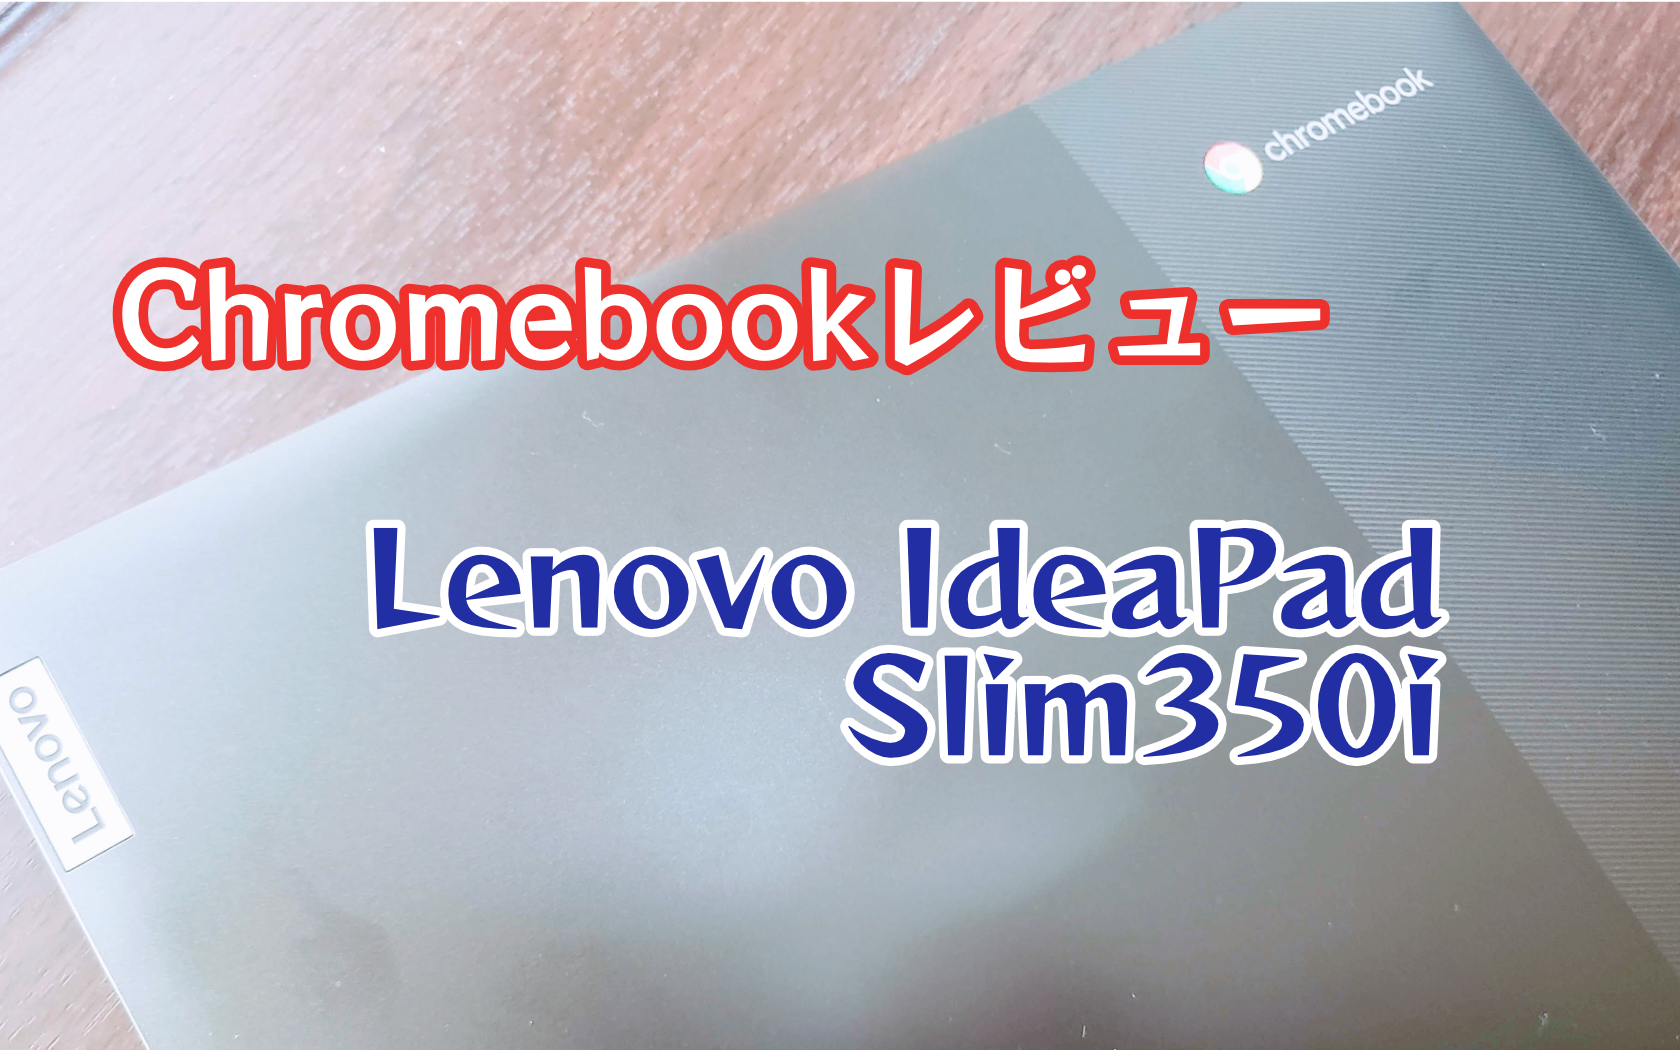 Lenovo IdeaPad Slim350i Chromebookアイキャッチ